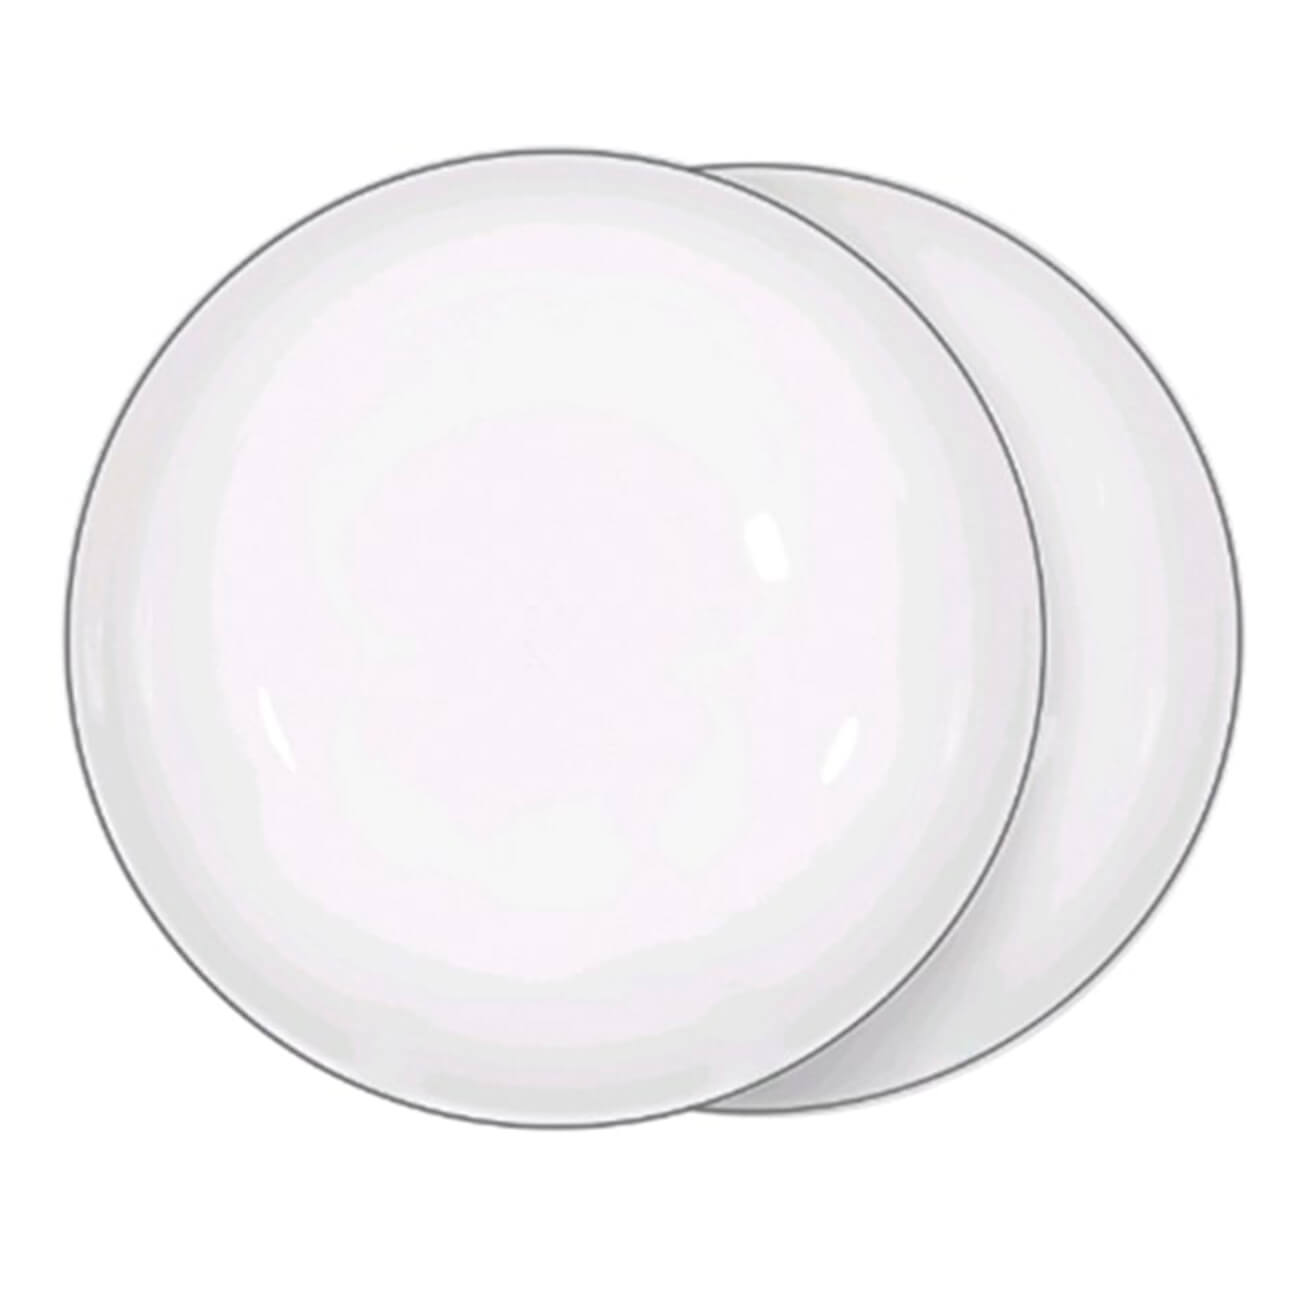 Тарелка суповая, 20х5 см, 2 шт, фарфор F, белая, Ideal silver тарелка суповая golden opal pink helen волна 22 5 см